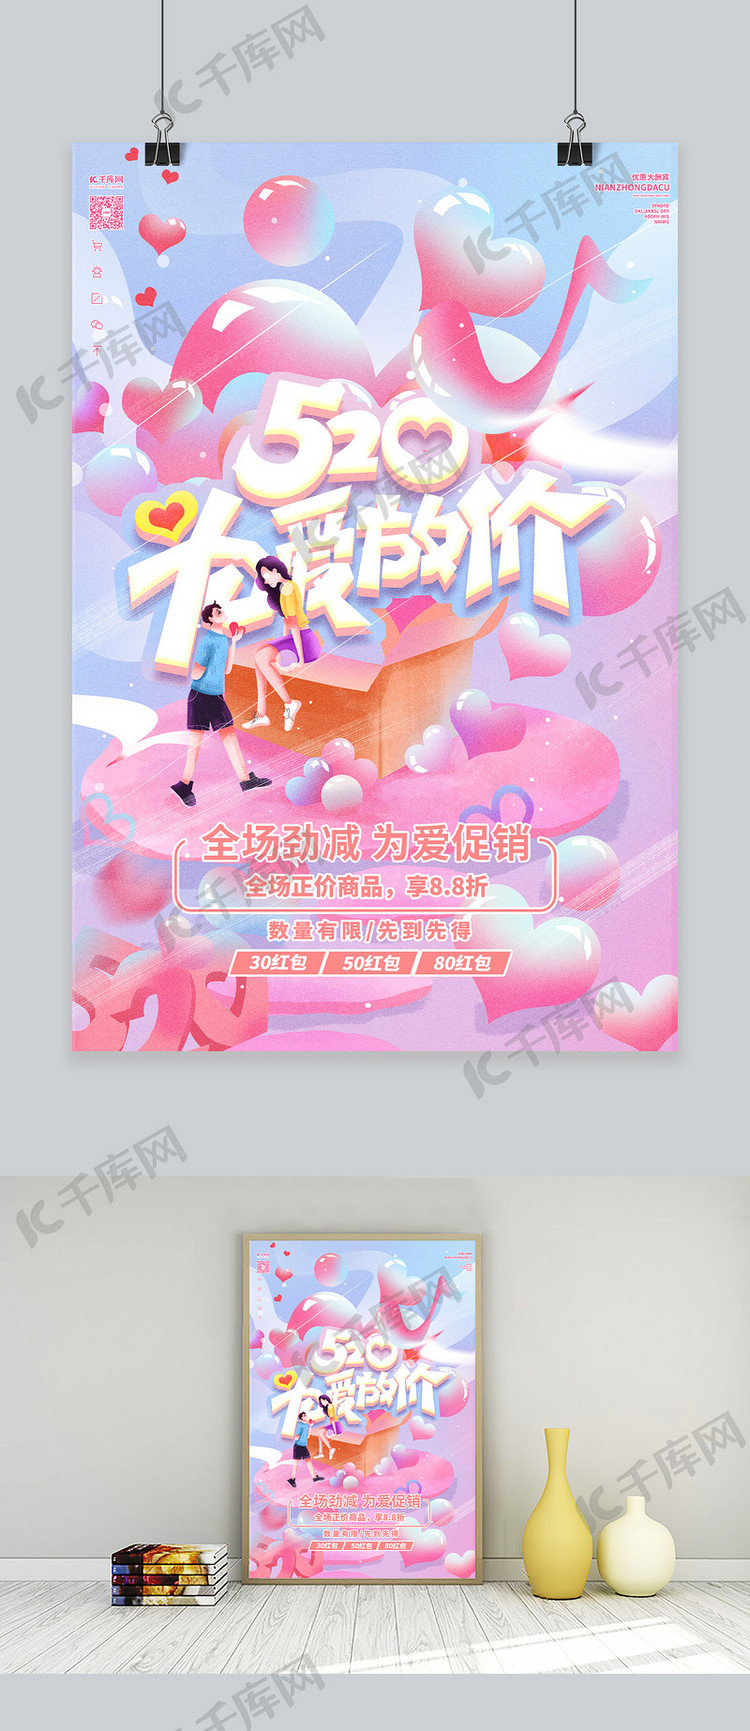 520优惠情人节活动粉色插画海报